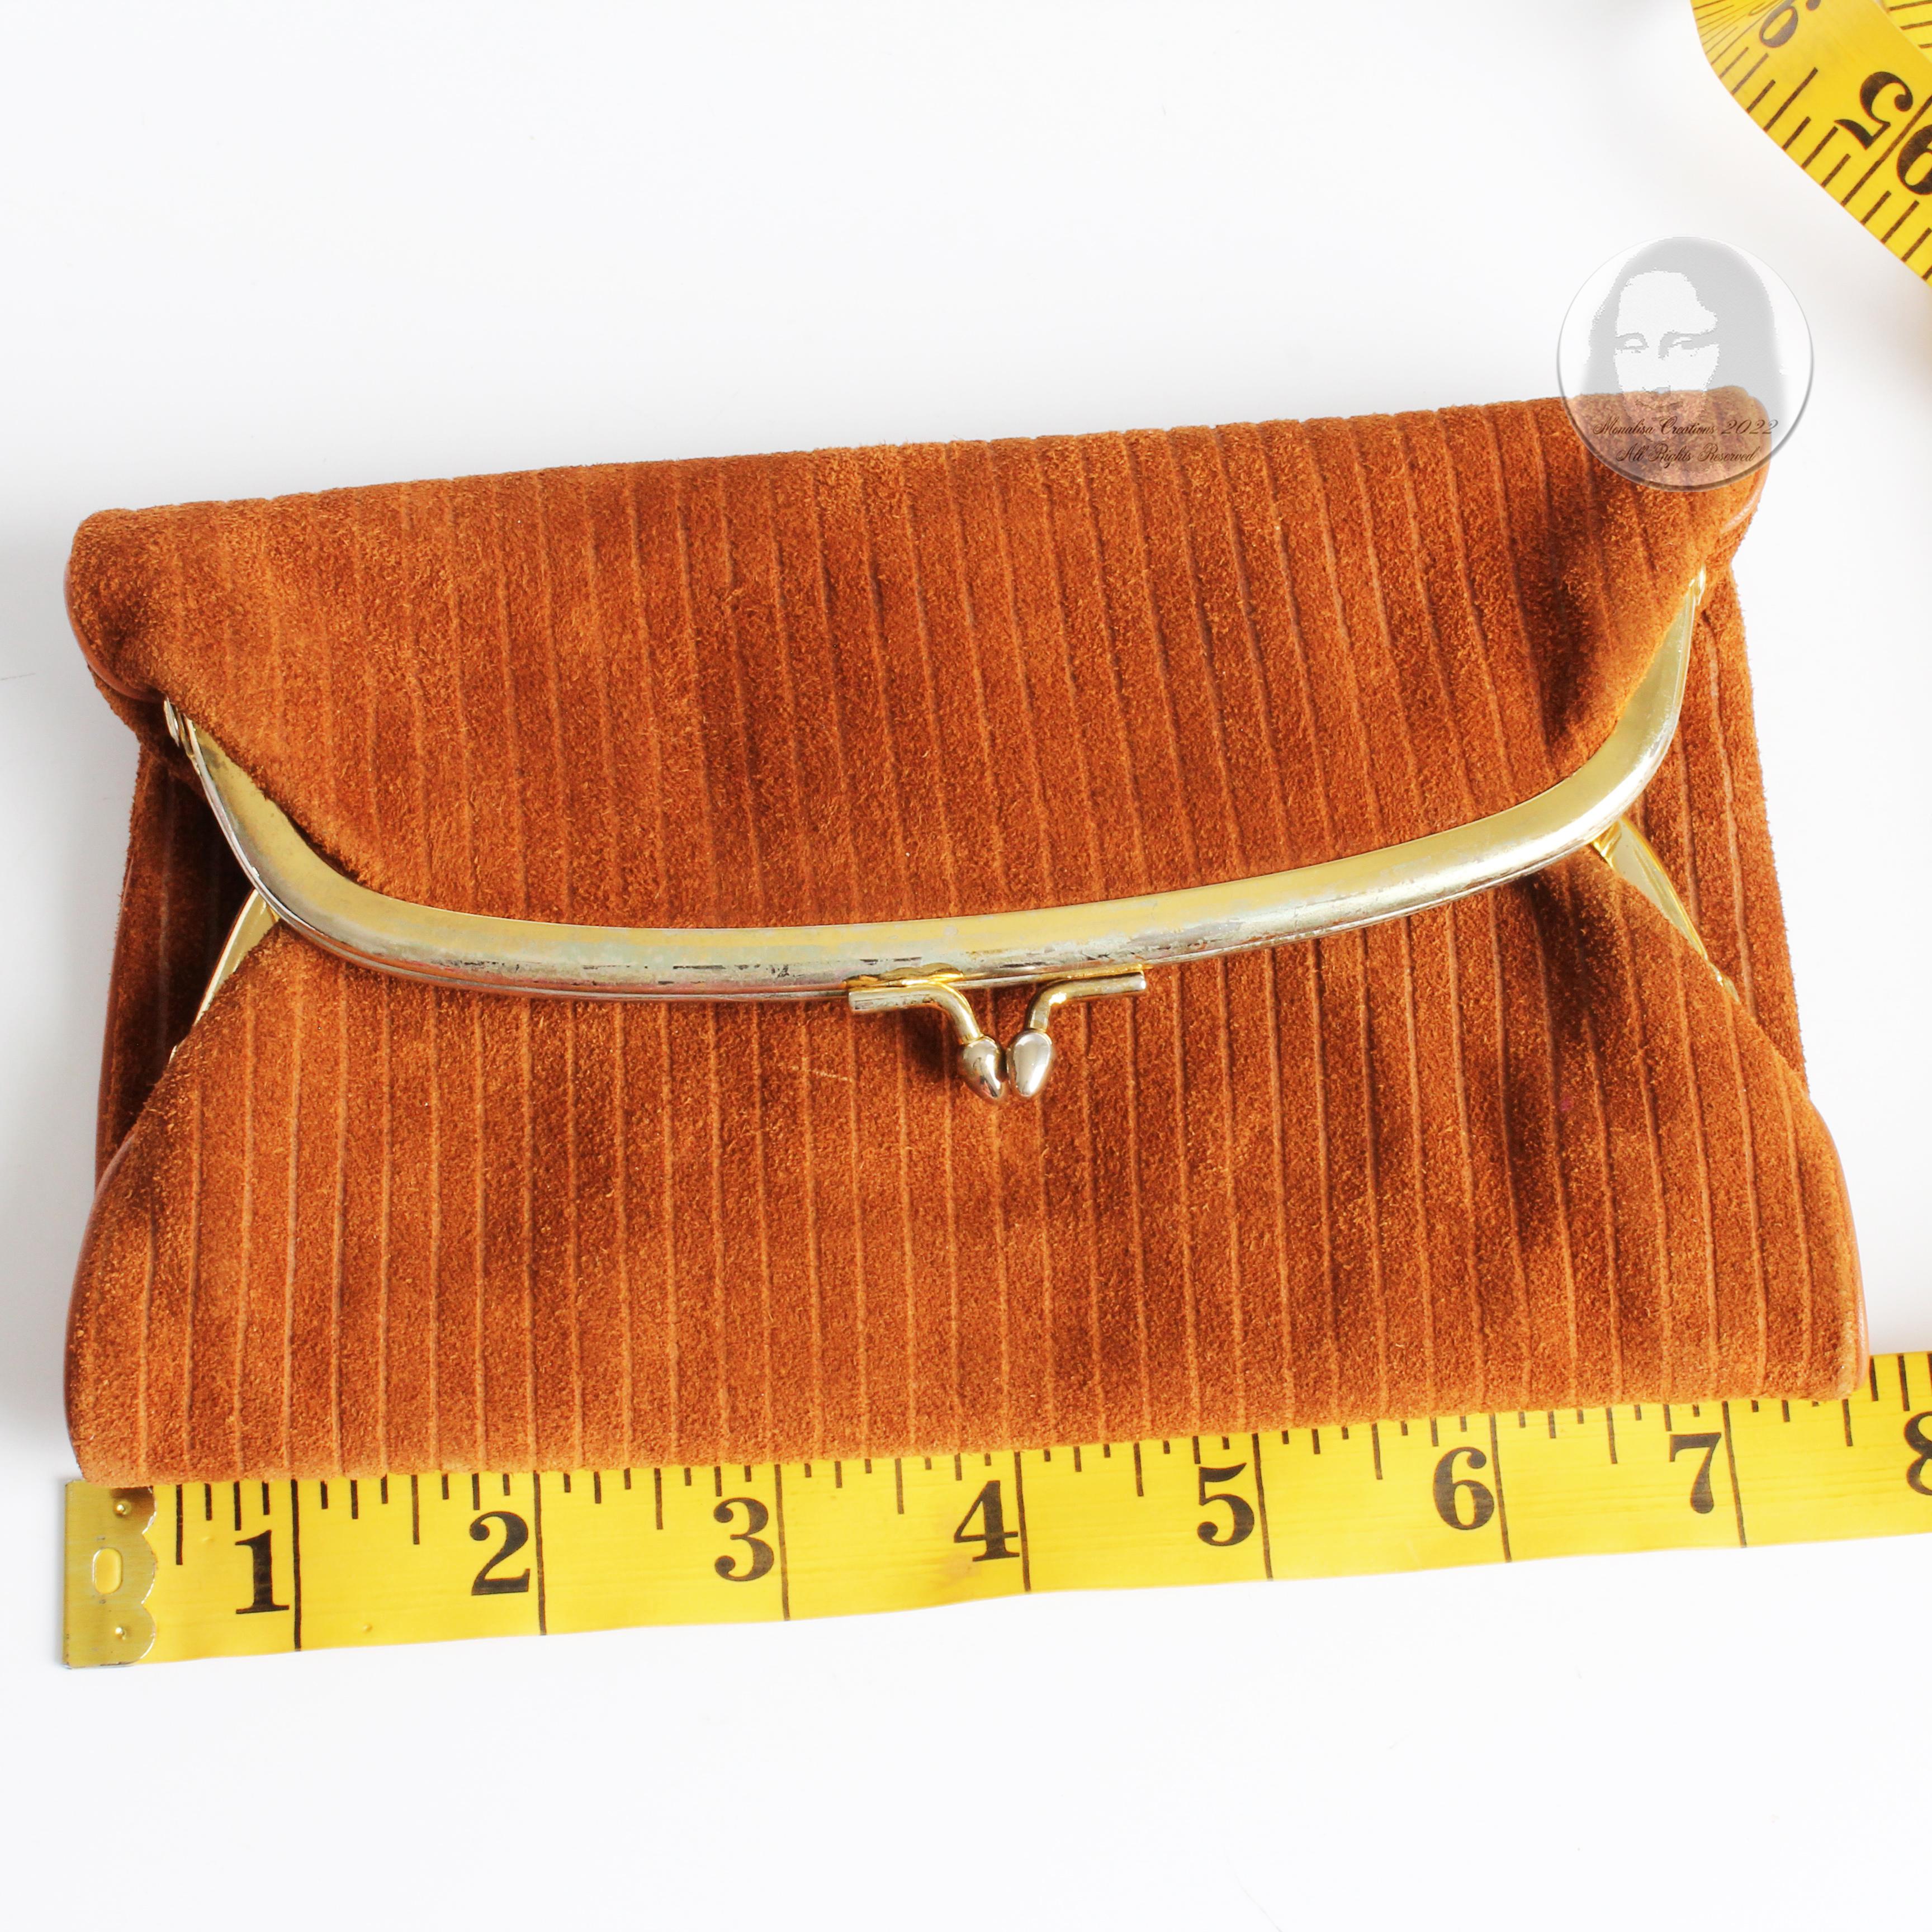 Bonnie Cashin Clutch Bag Double Kisslock Pouch Wallet Tan Suede Leather Rare 60s 6